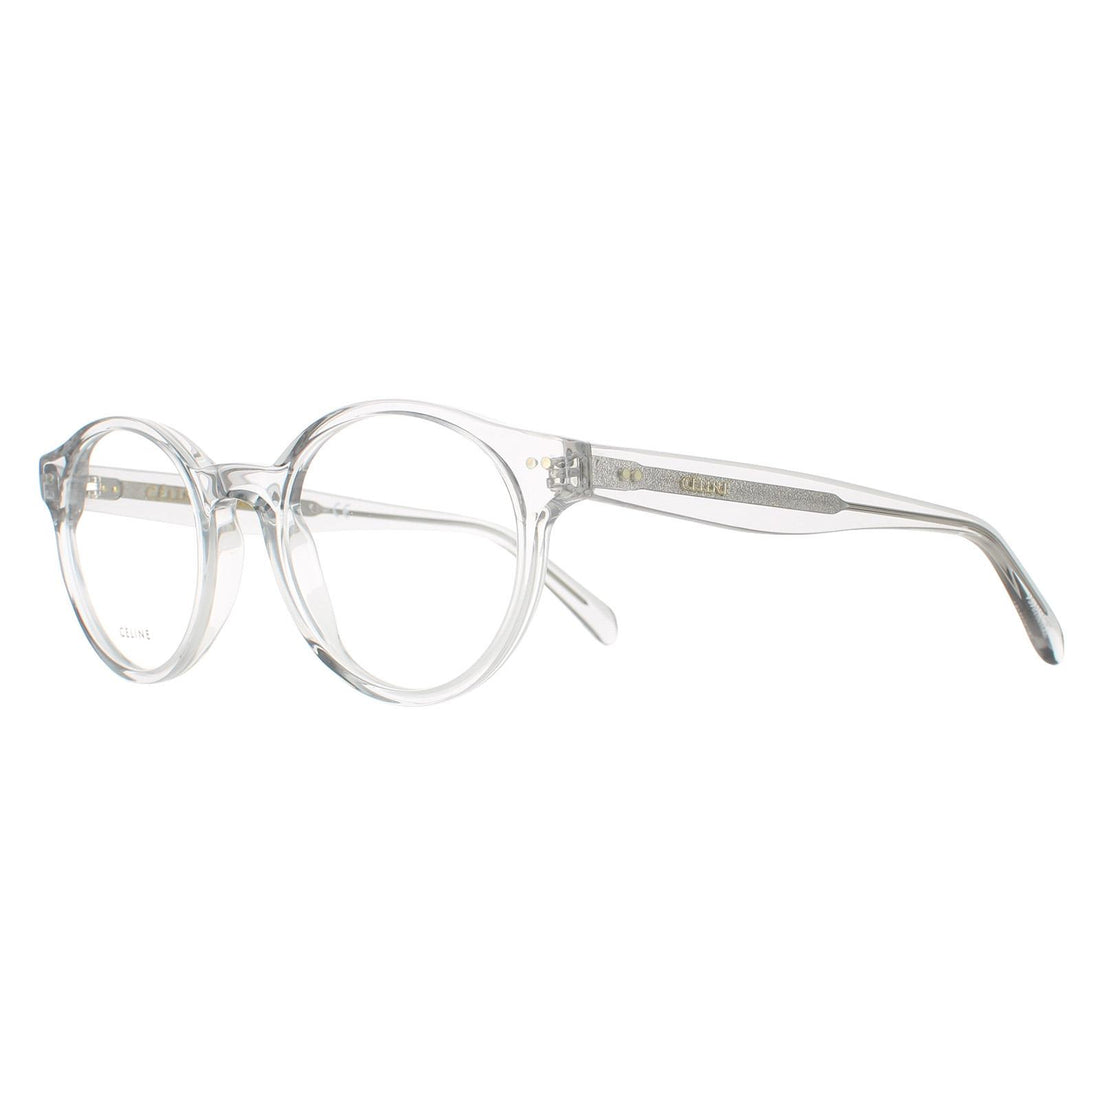 Celine CL50008I Glasses Frames